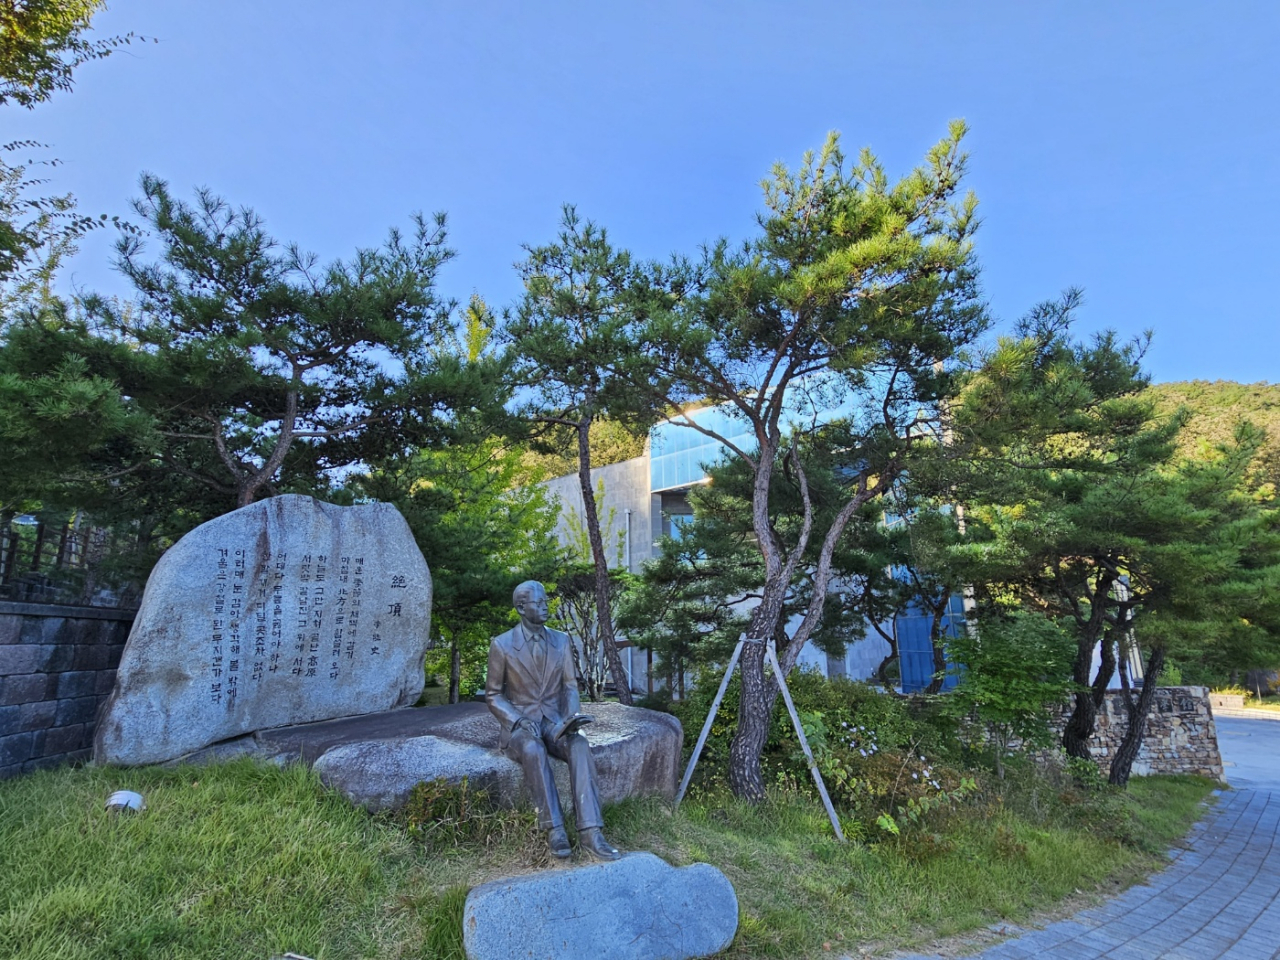 Yi Yuksa Literary Museum located in Andong, North Gyeongsang Province (Kim Hae-yeon/ The Korea Herald)